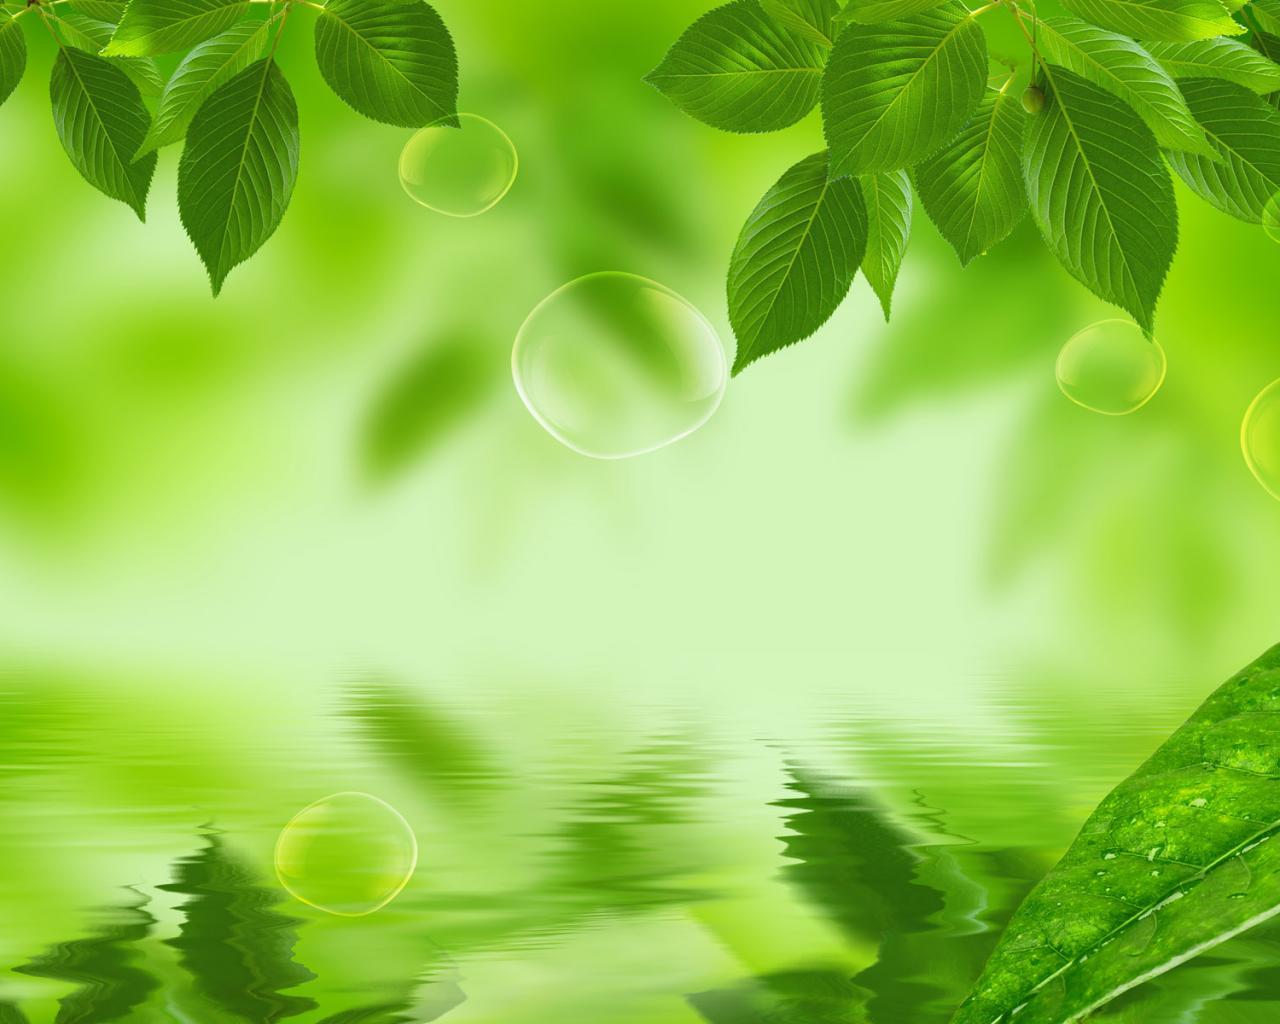 Wallpaper For > Green Leaf Background